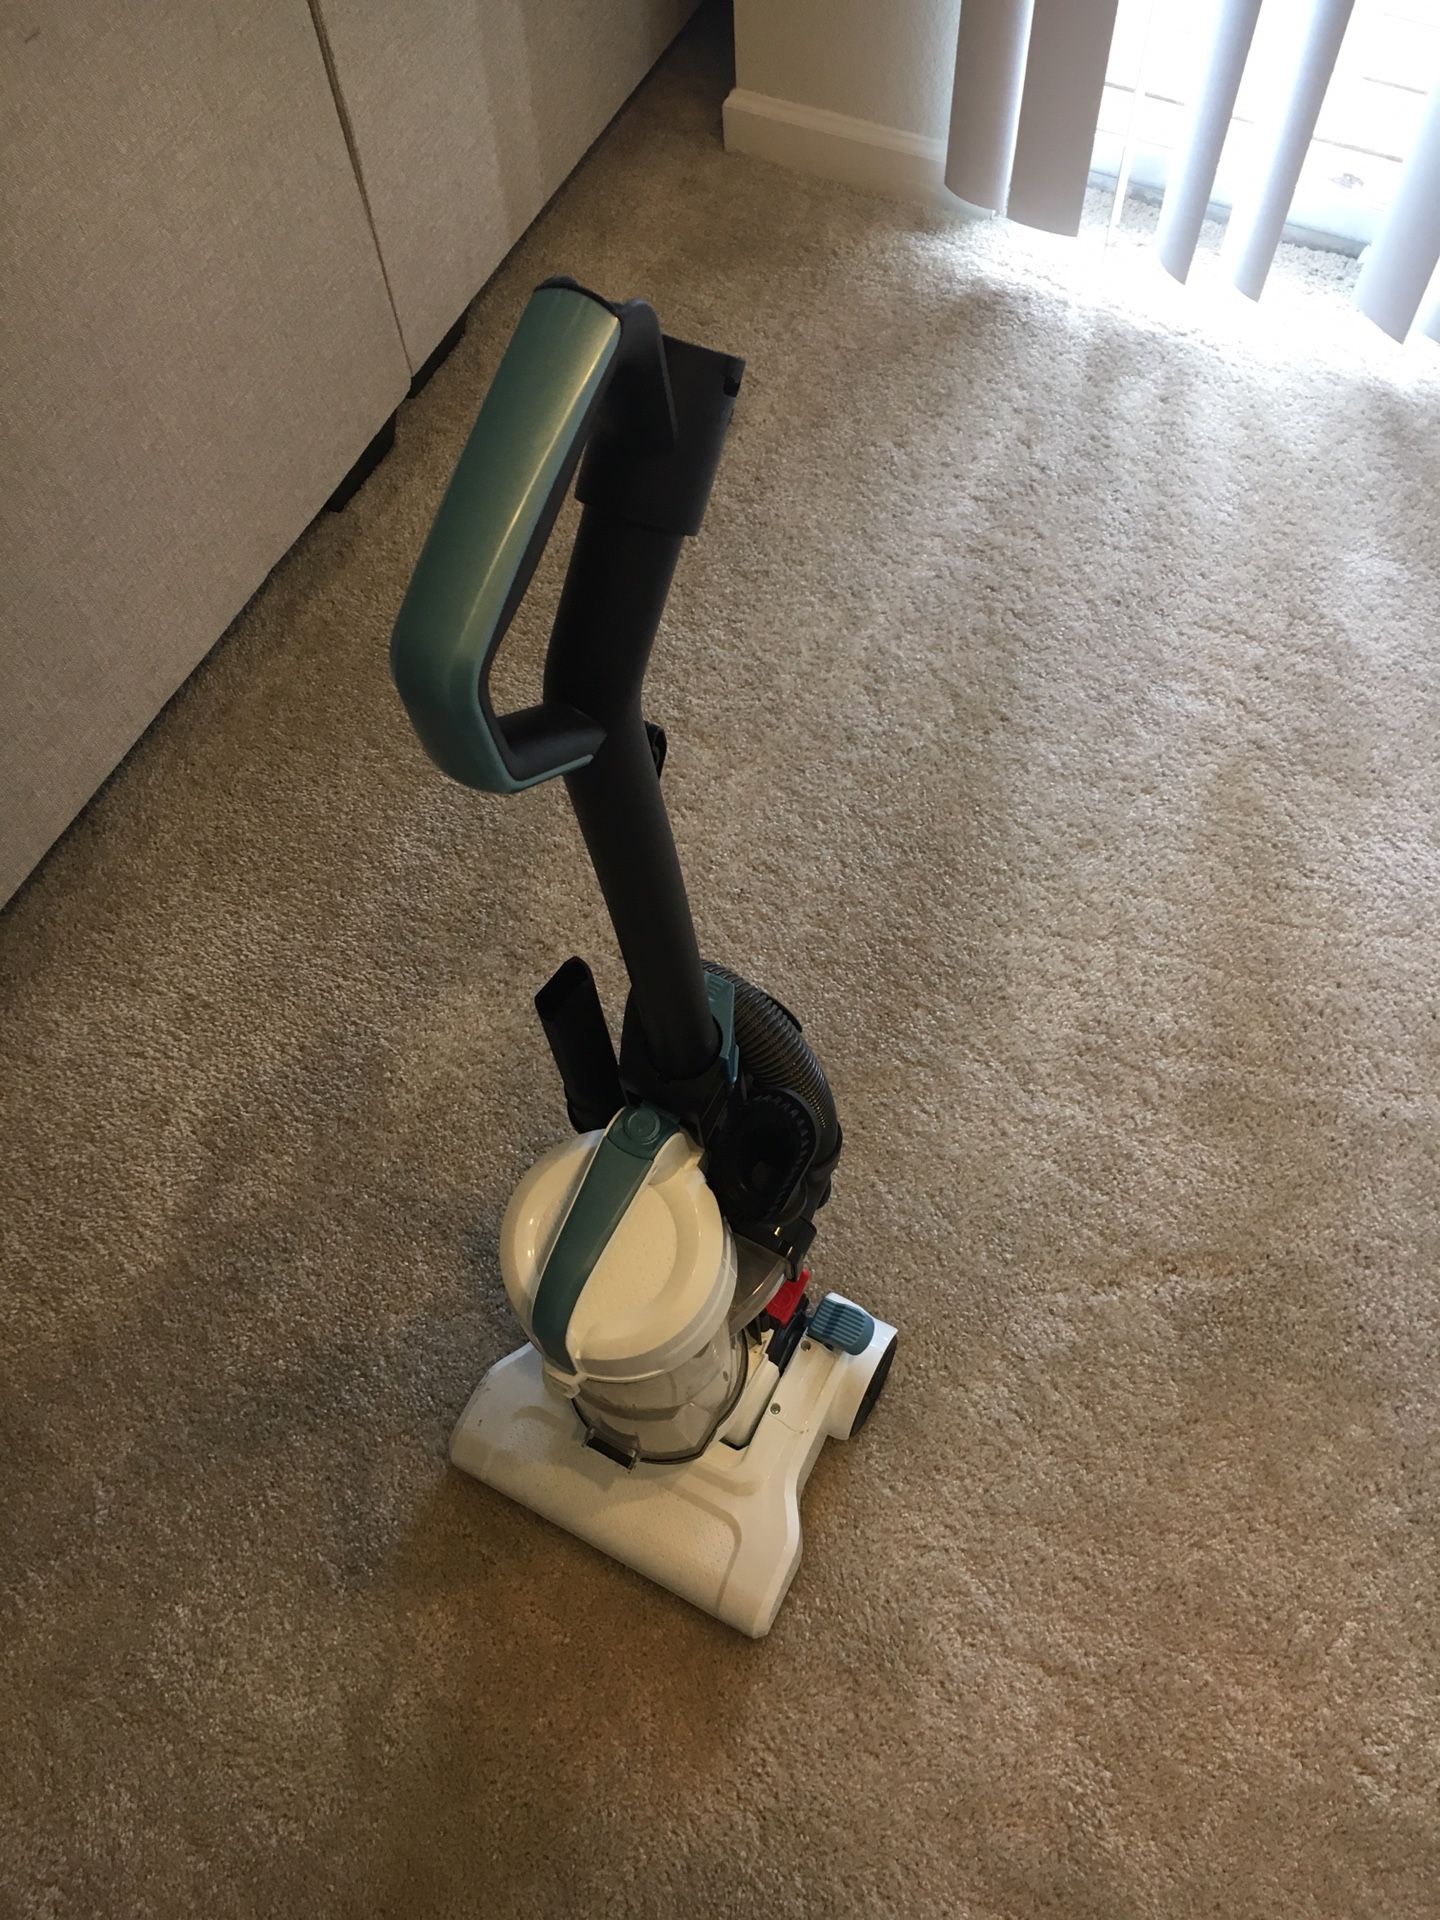 Vacuum (black and decker)